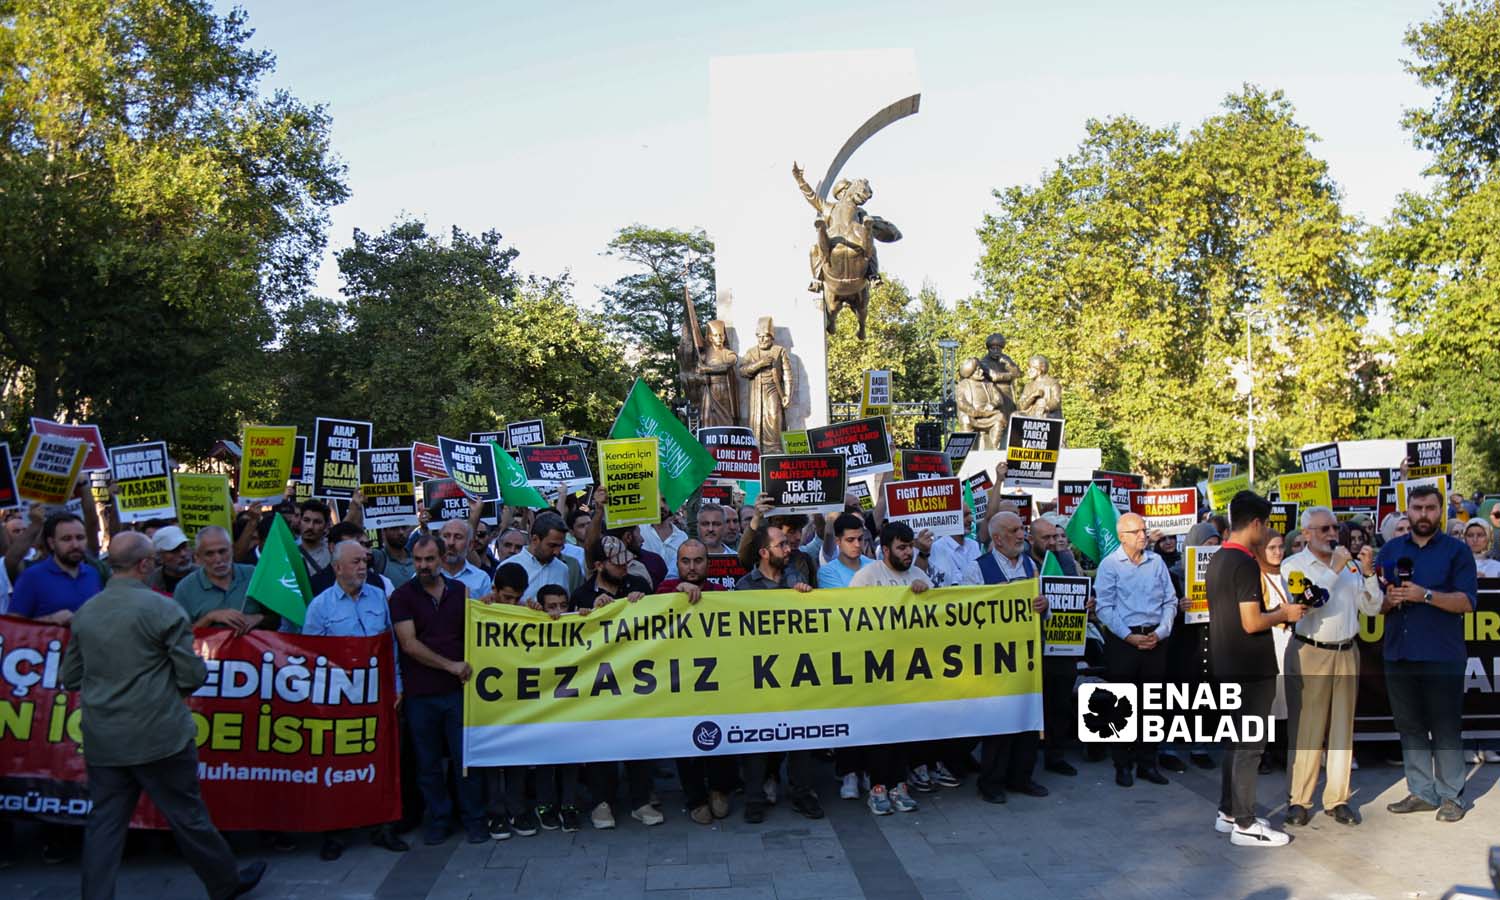 ناشطون أتراك يتضامنون مع اللاجئين السوريين في تركيا ويطالبون بوقف خطاب الكراهية ومحاسبة العنصريين- اسطنبول 16 من أيلول 2023 (- يوسف حمّص)